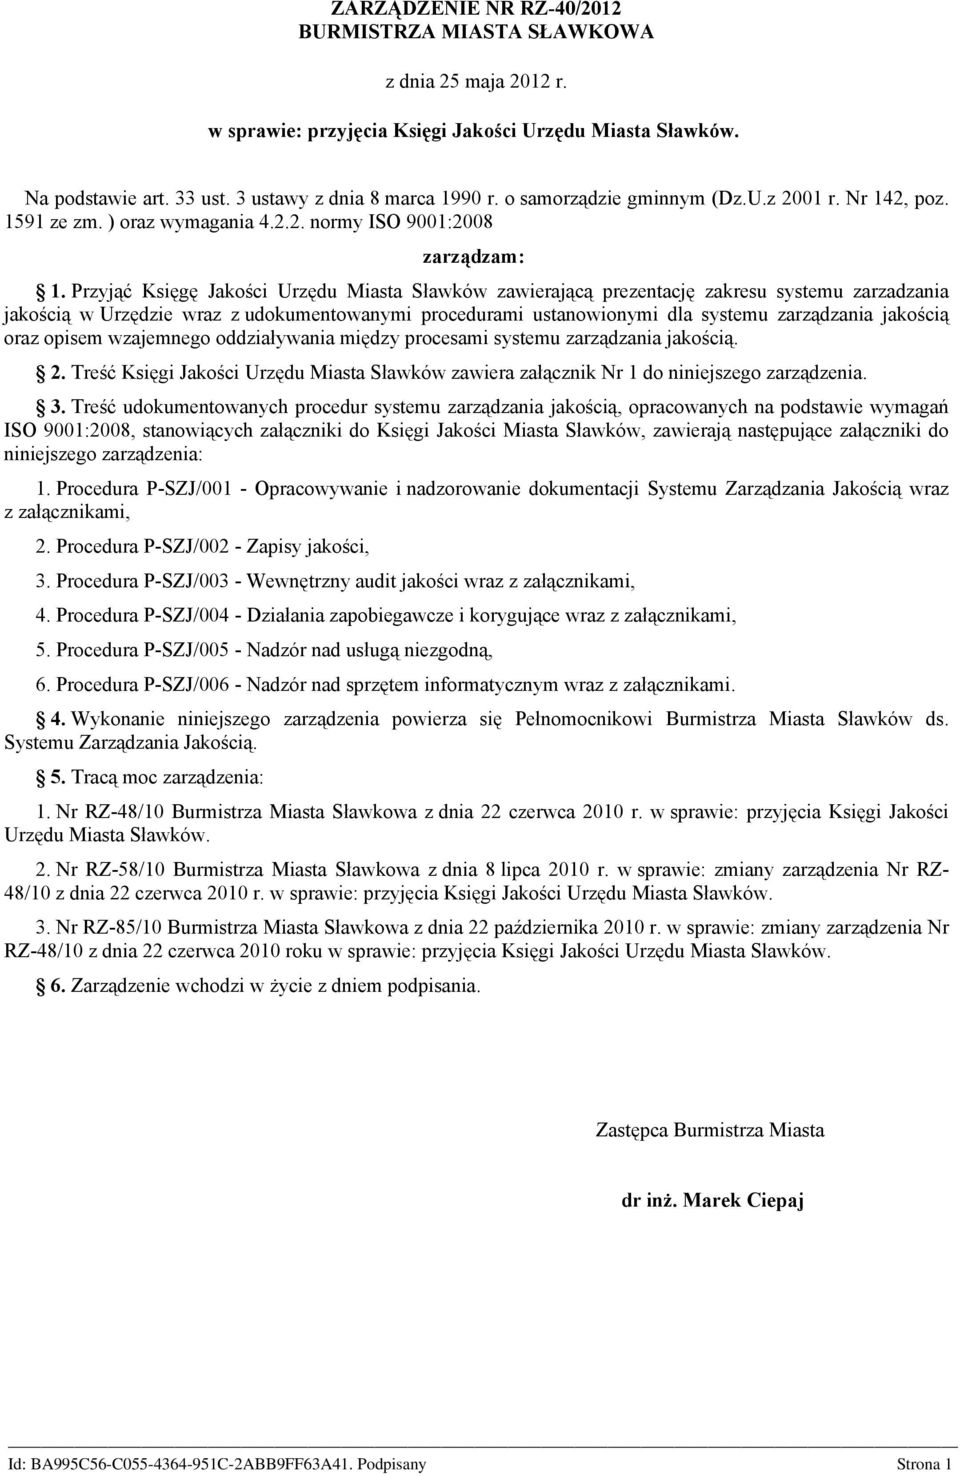 Przyjąć Księgę Jakości Urzędu Miasta Sławków zawierającą prezentację zakresu systemu zarzadzania jakością w Urzędzie wraz z udokumentowanymi procedurami ustanowionymi dla systemu zarządzania jakością